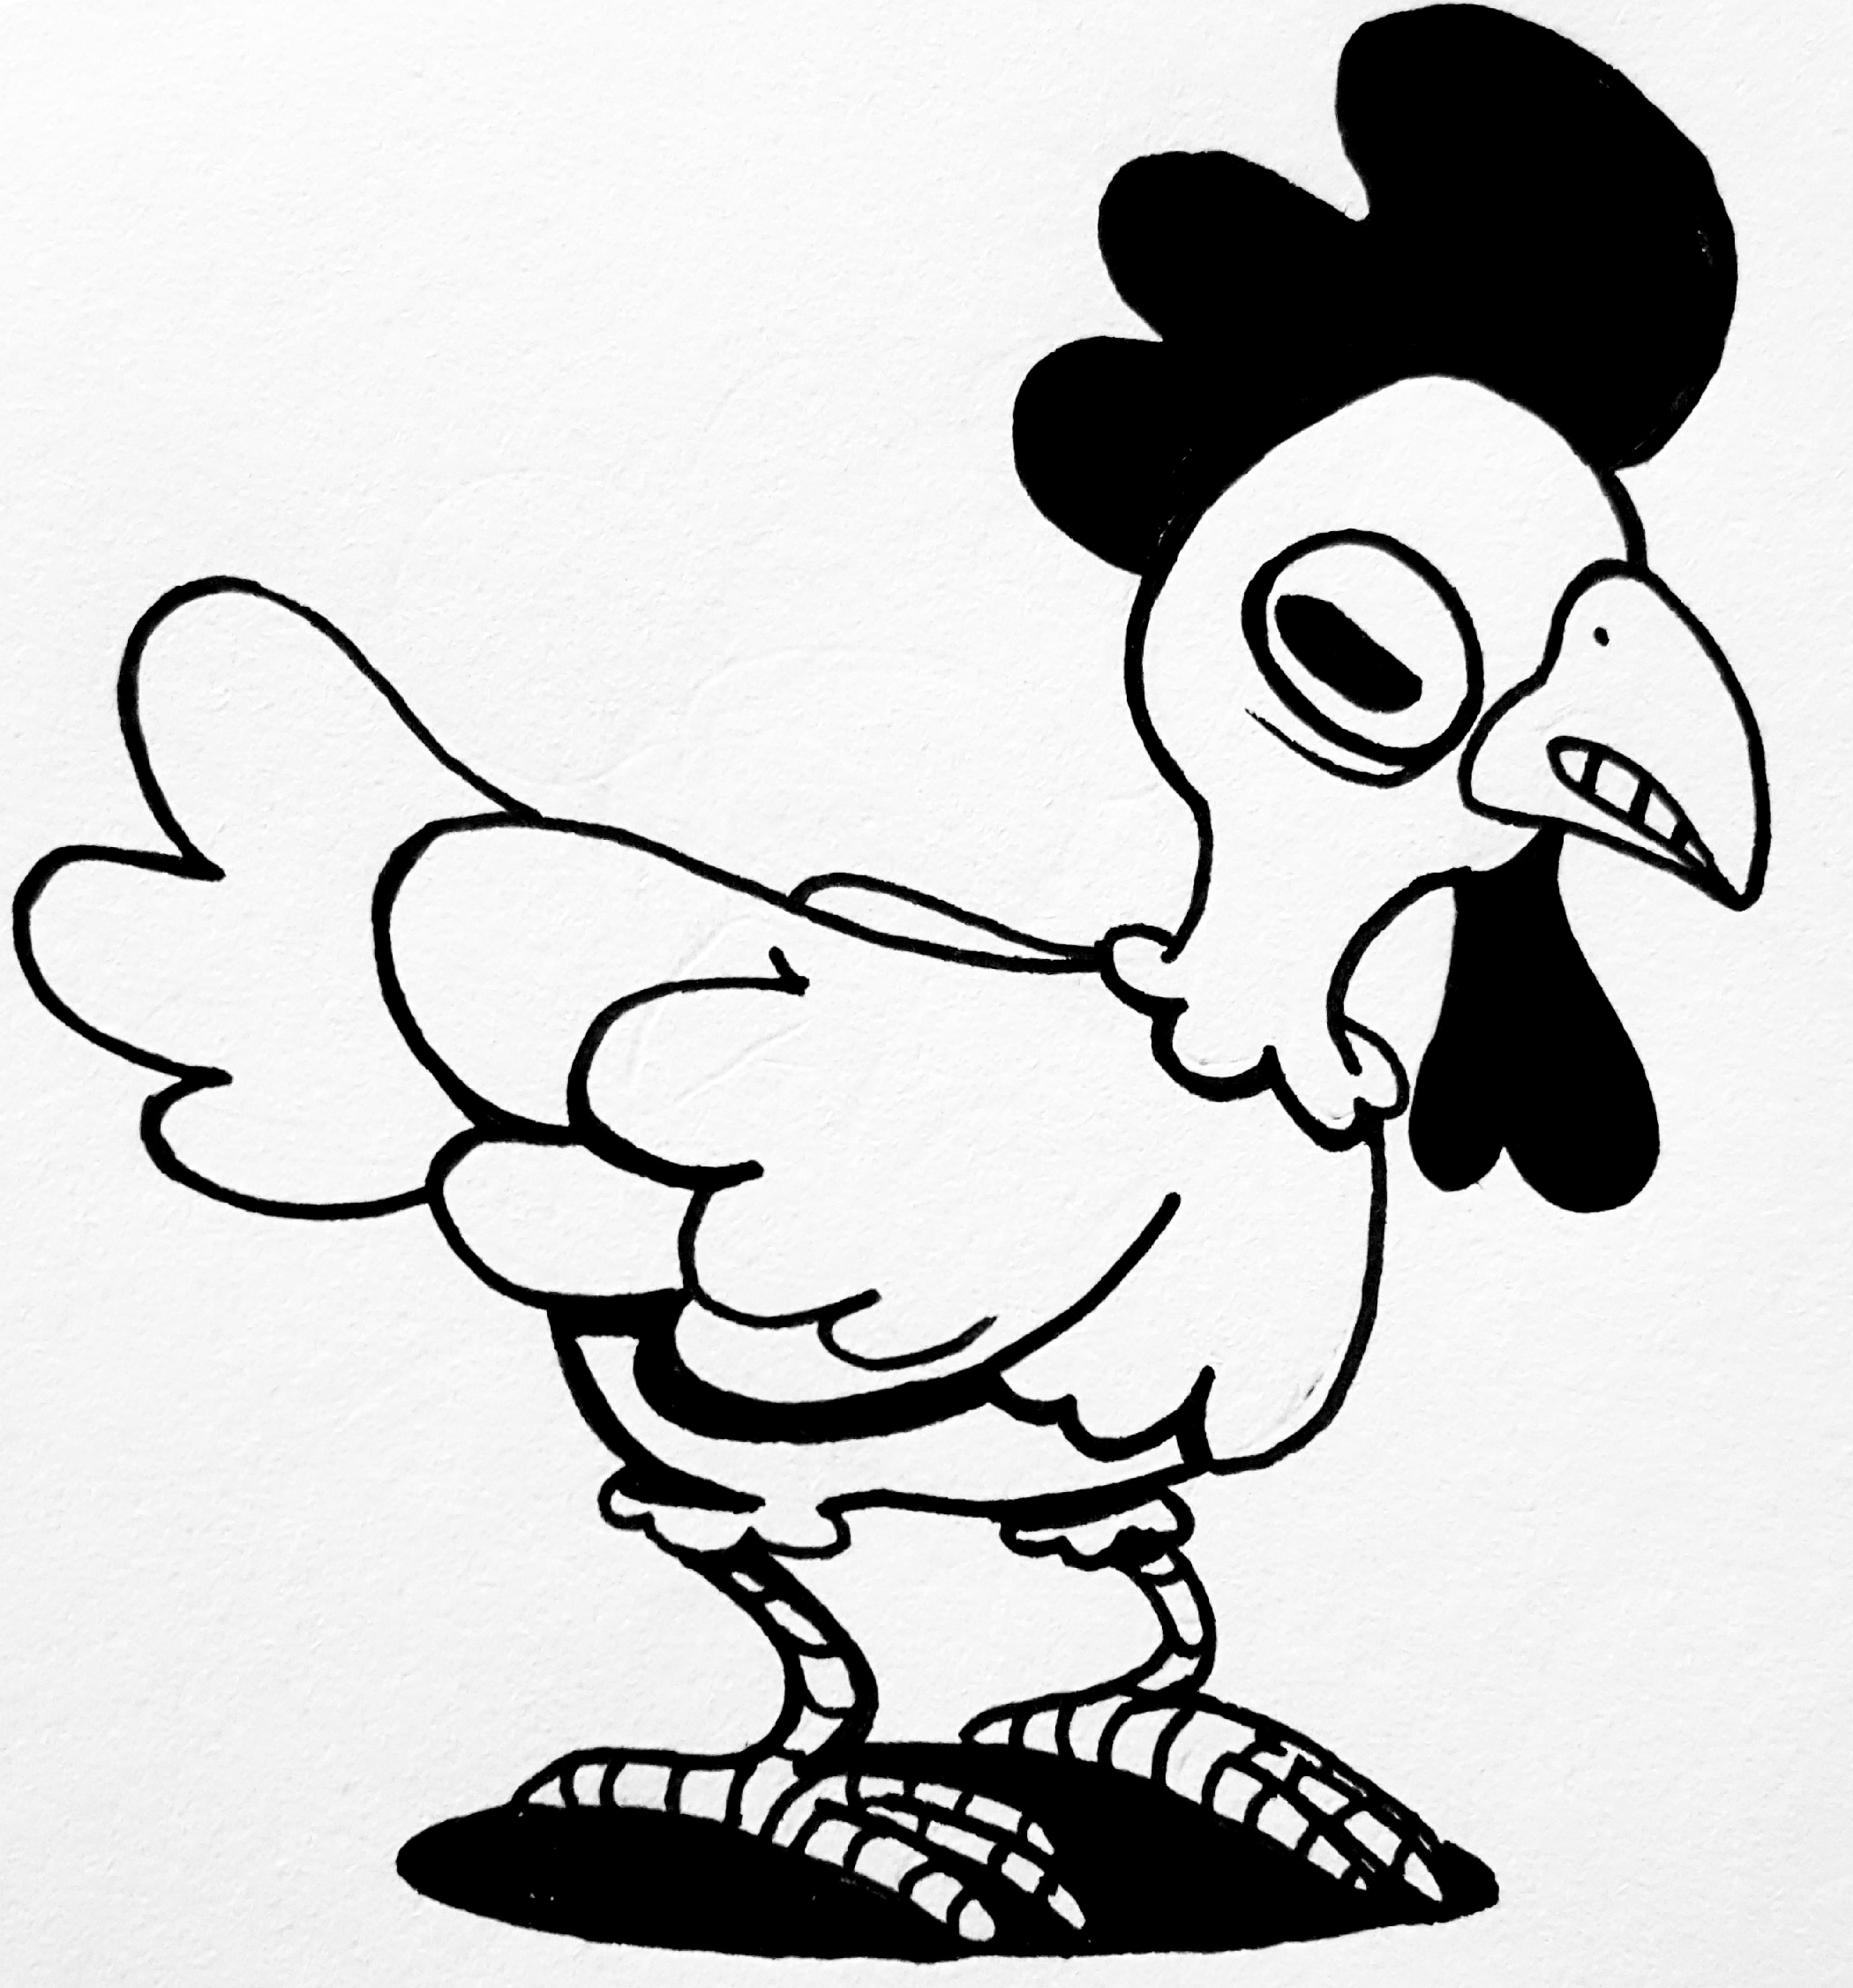 Inktober Day 5: Chicken